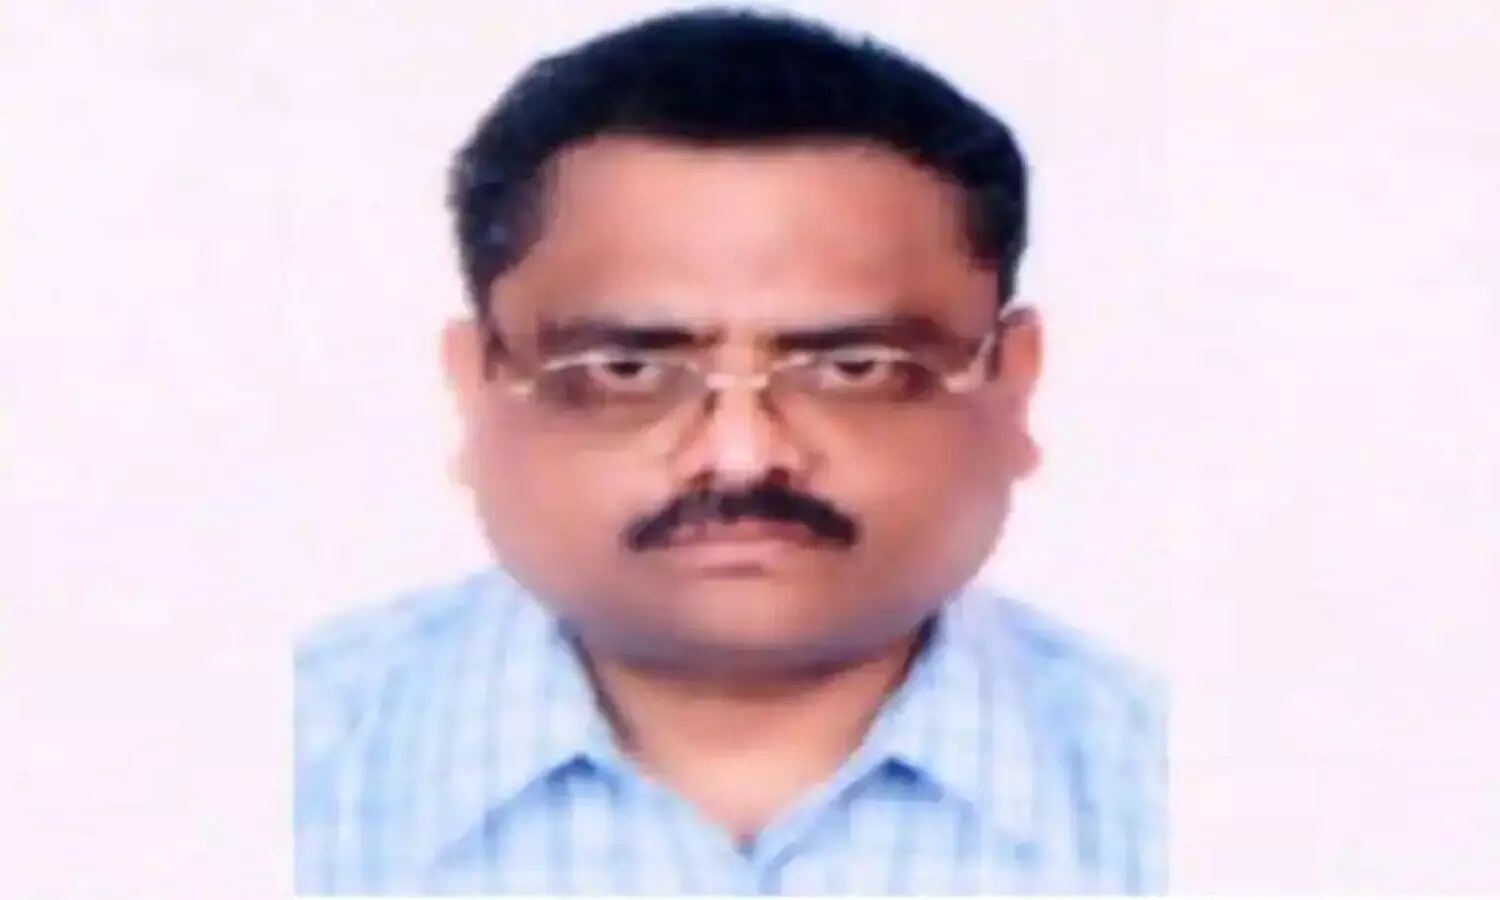 बिहार के मुख्य सचिव अरुण कुमार सिंह का निधन, कोरोना के चलते अस्पताल में हुए थे भर्ती